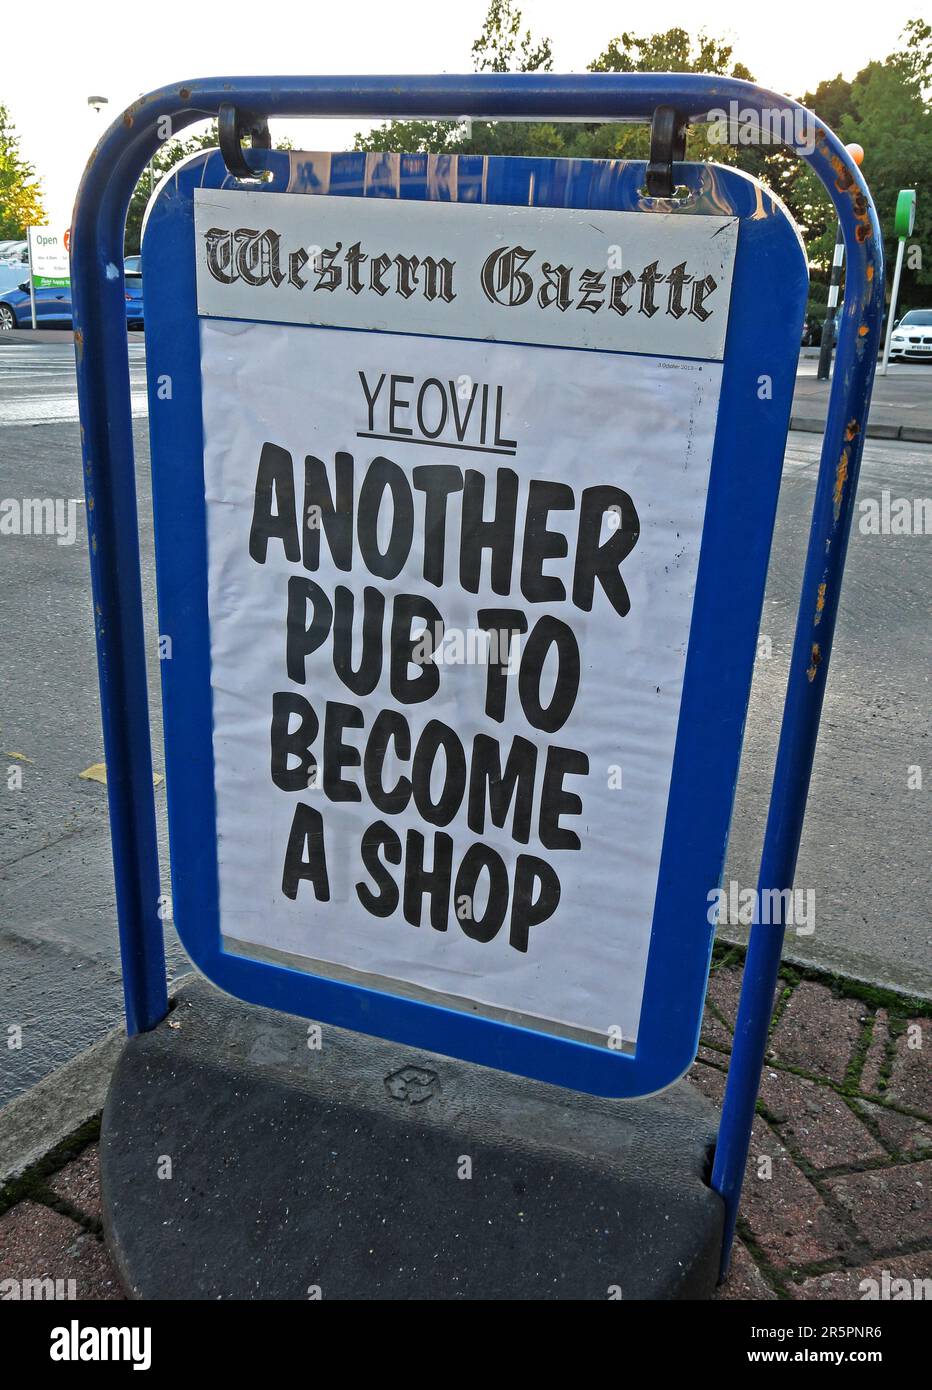 Ein weiterer Pub, der zu einem Geschäft wurde, Schlagzeile der Yeovil Western Gazette, Somerset, Südwestengland, Großbritannien Stockfoto